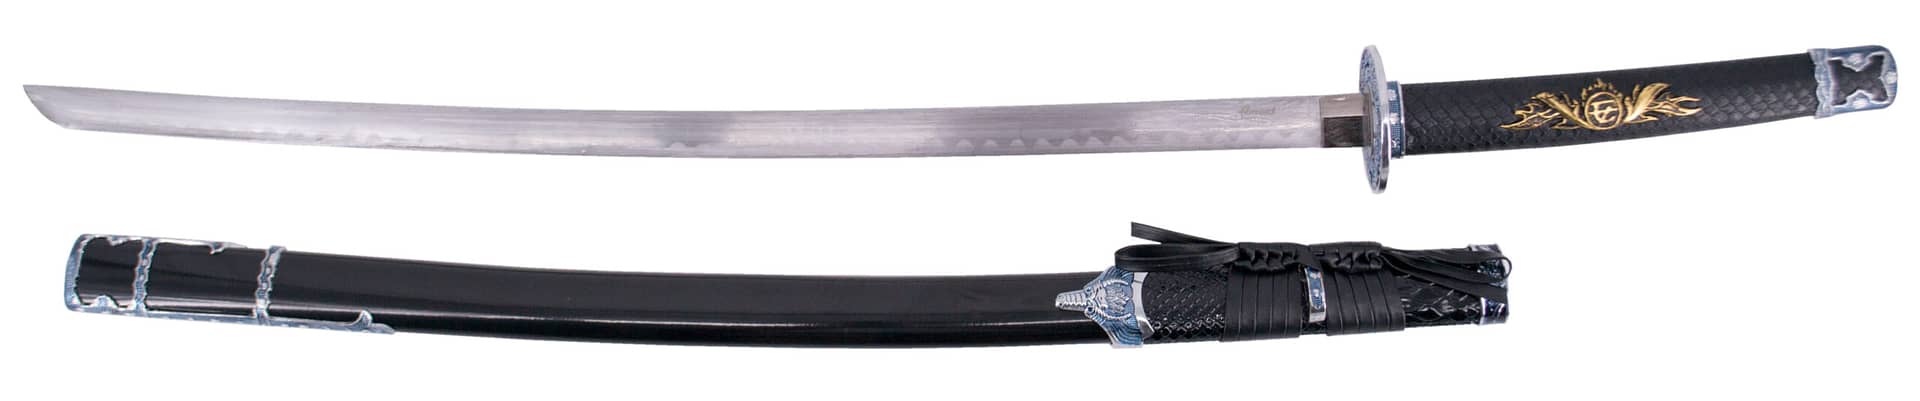 Katana Decorativa S2023 - Espadas y Más